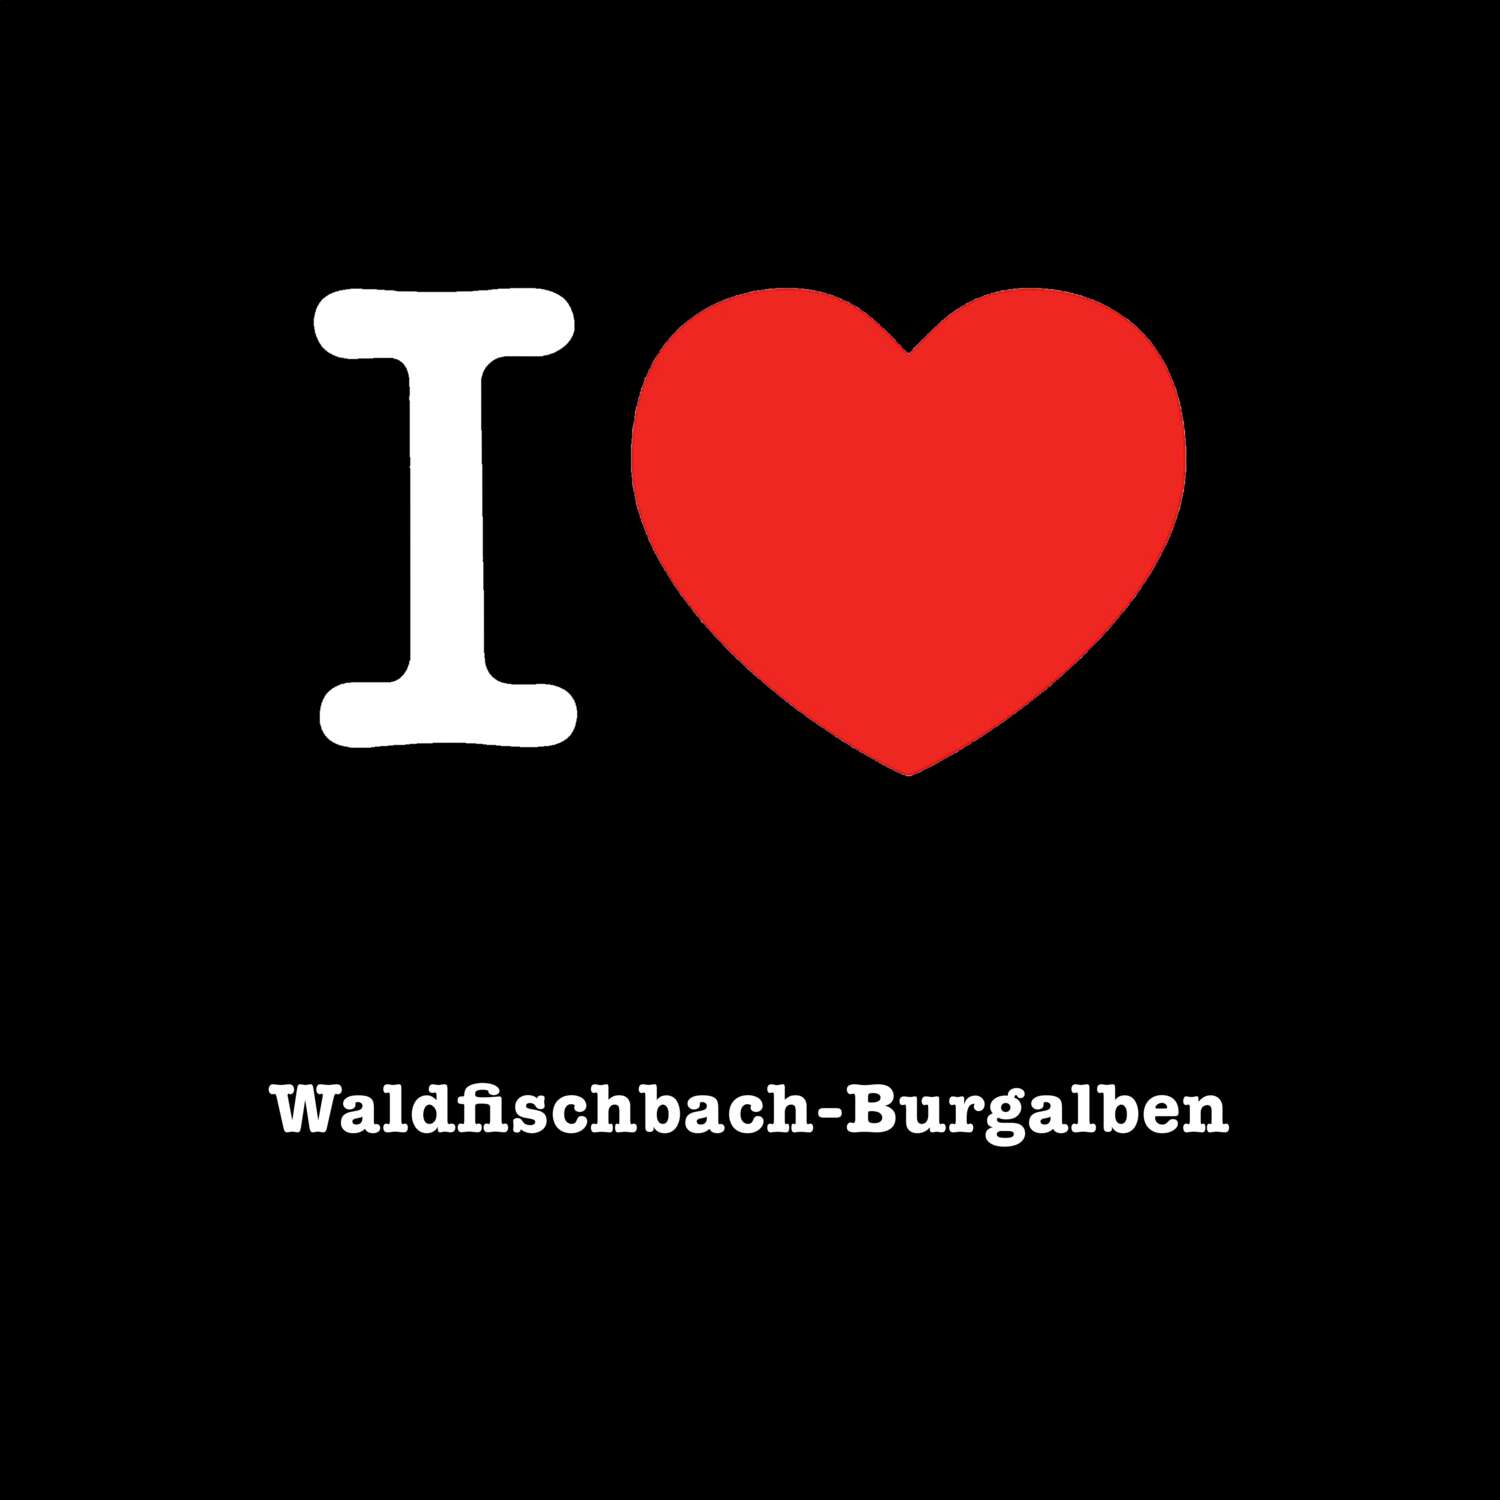 Waldfischbach-Burgalben T-Shirt »I love«